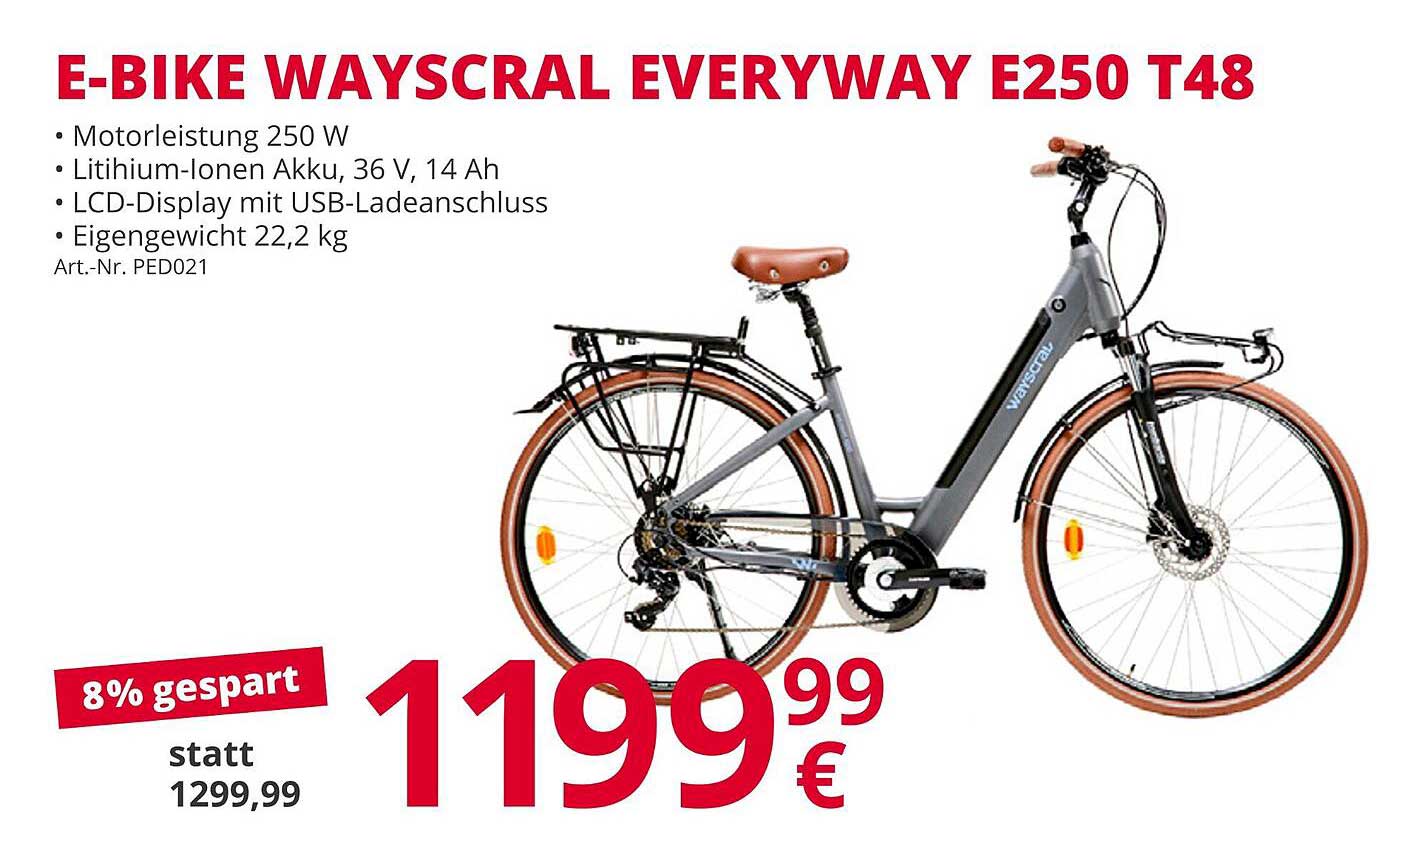 ATU E-bike Wayscral Everyway E250 T48